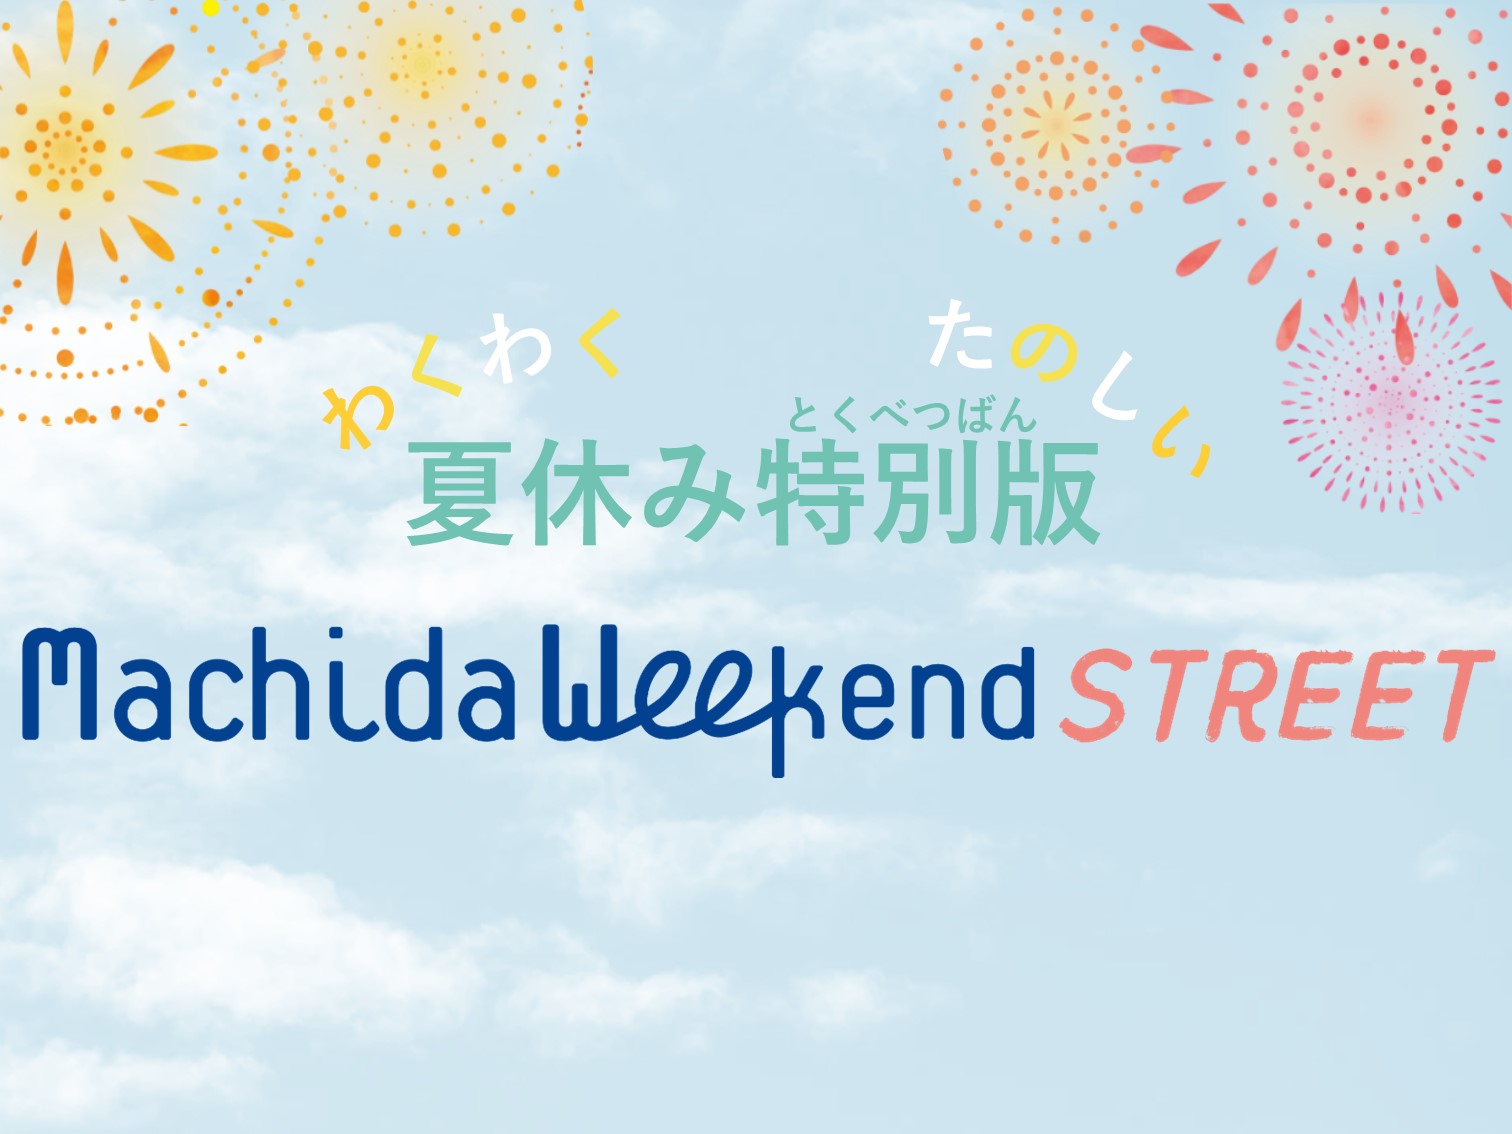 （イメージ）【地区街づくり課】Machida Weekend STREET 夏休み特別版